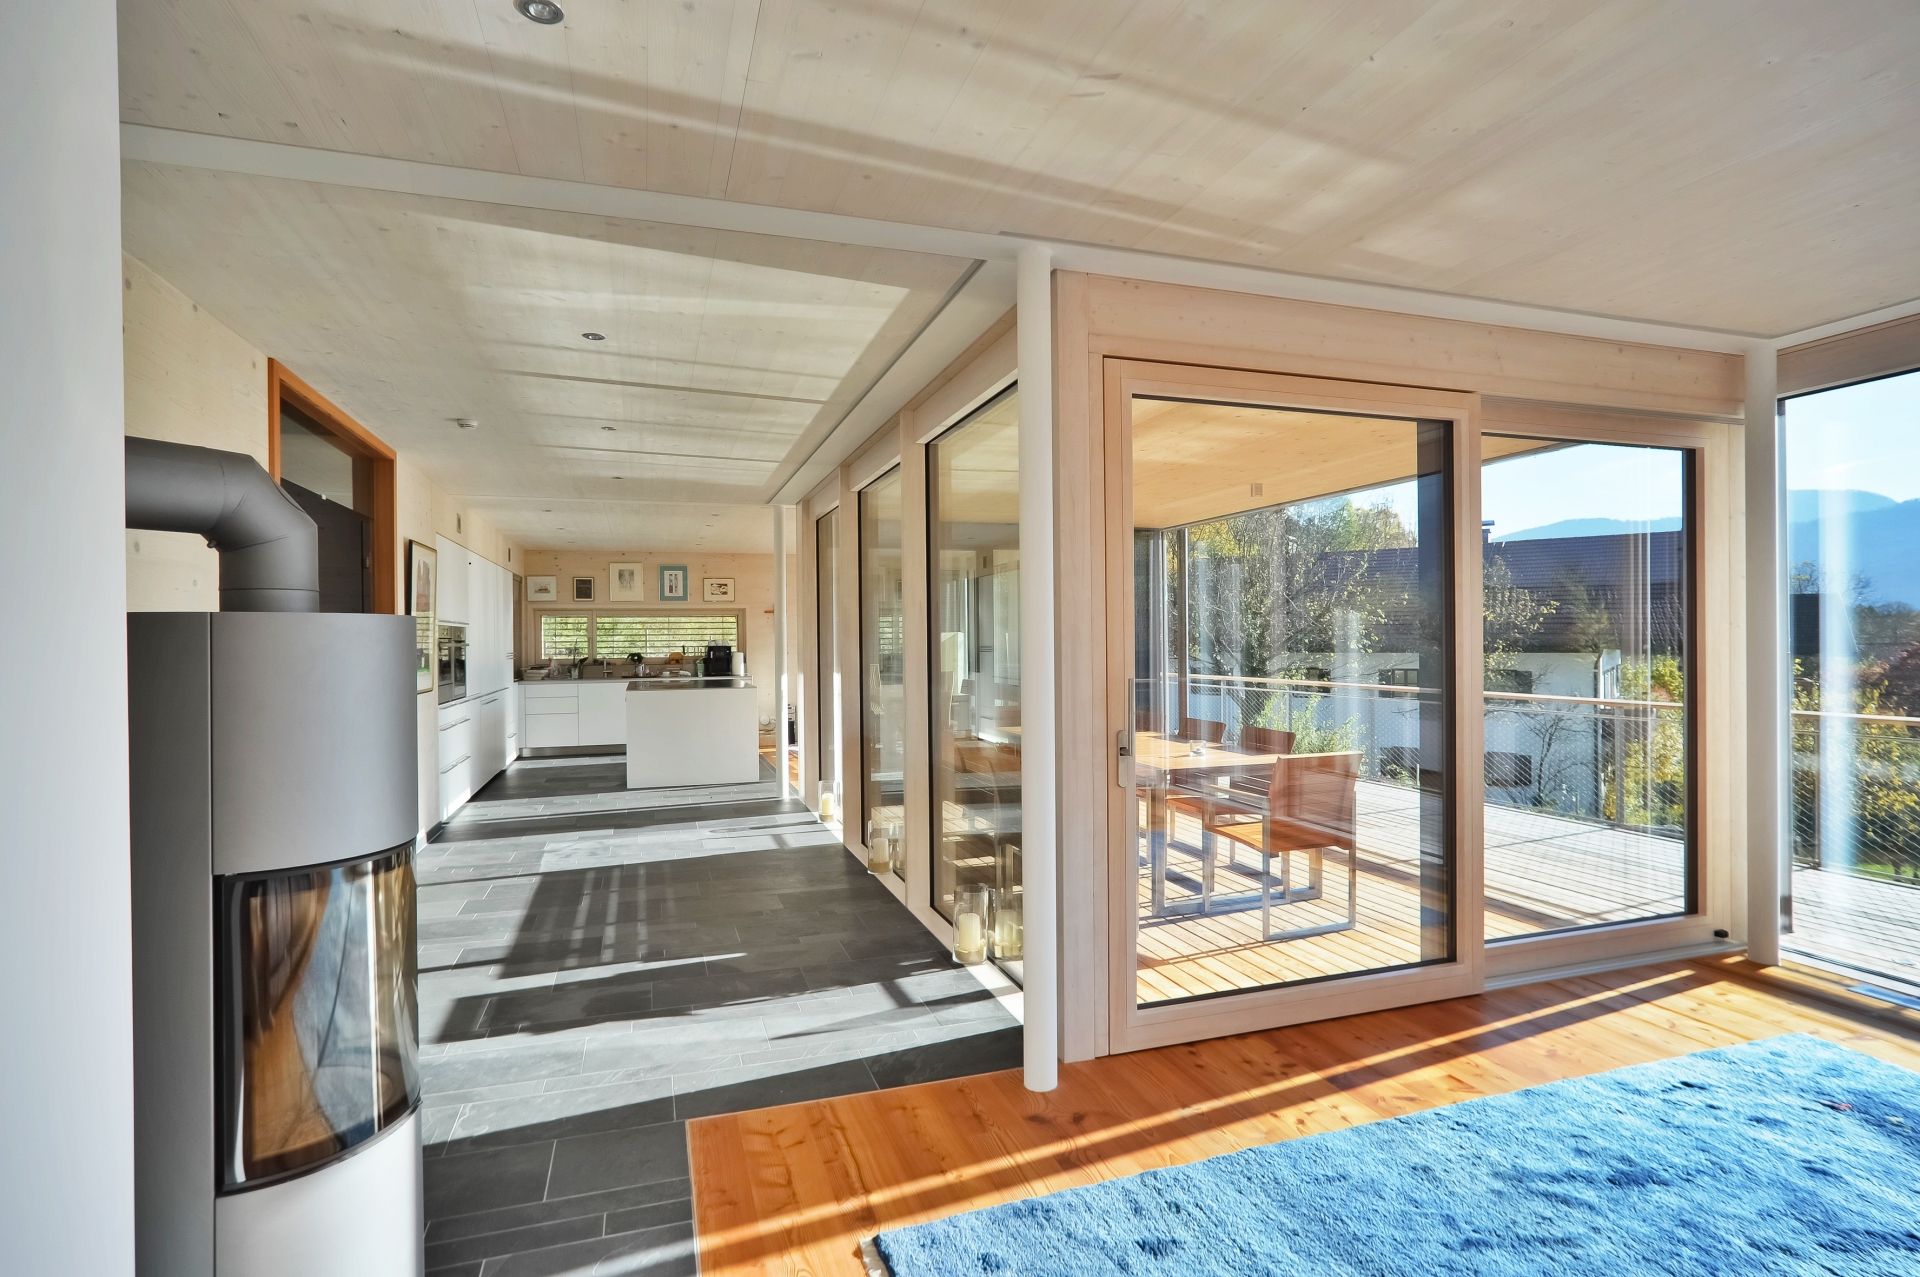 Blick aus einem Wohnzimmer in eine offene, helle Küche mit bodentiefen Fenstern